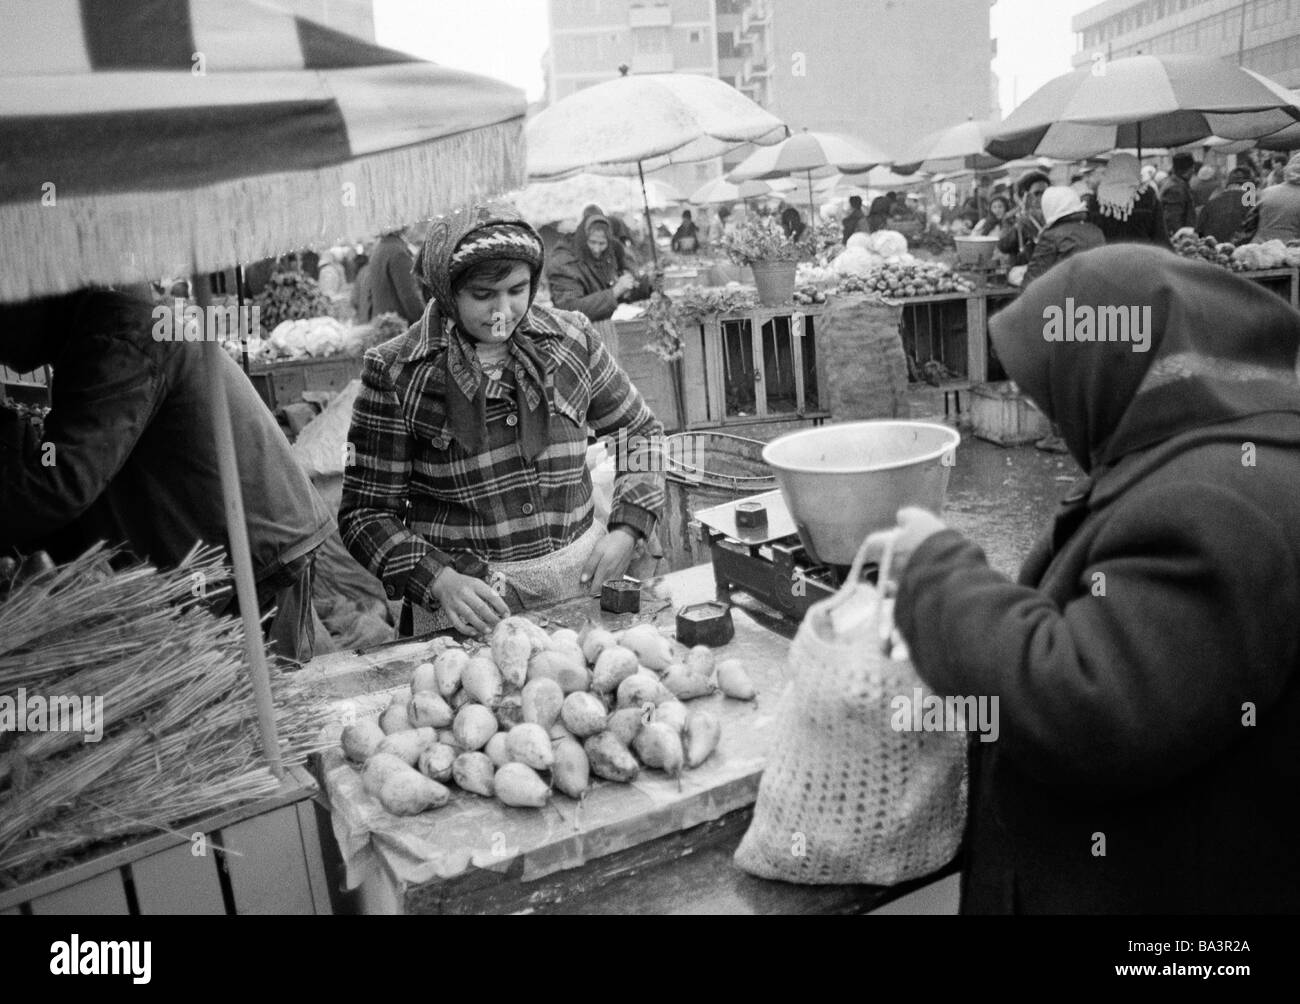 Achtziger Jahre, schwarz / weiß Foto, Menschen, Wochenmarkt, Marktstand mit Obst und Gemüse Markt Mann, im Alter von 25 bis 30 Jahre, Rumänien, Rumänien, Bukarest Stockfoto